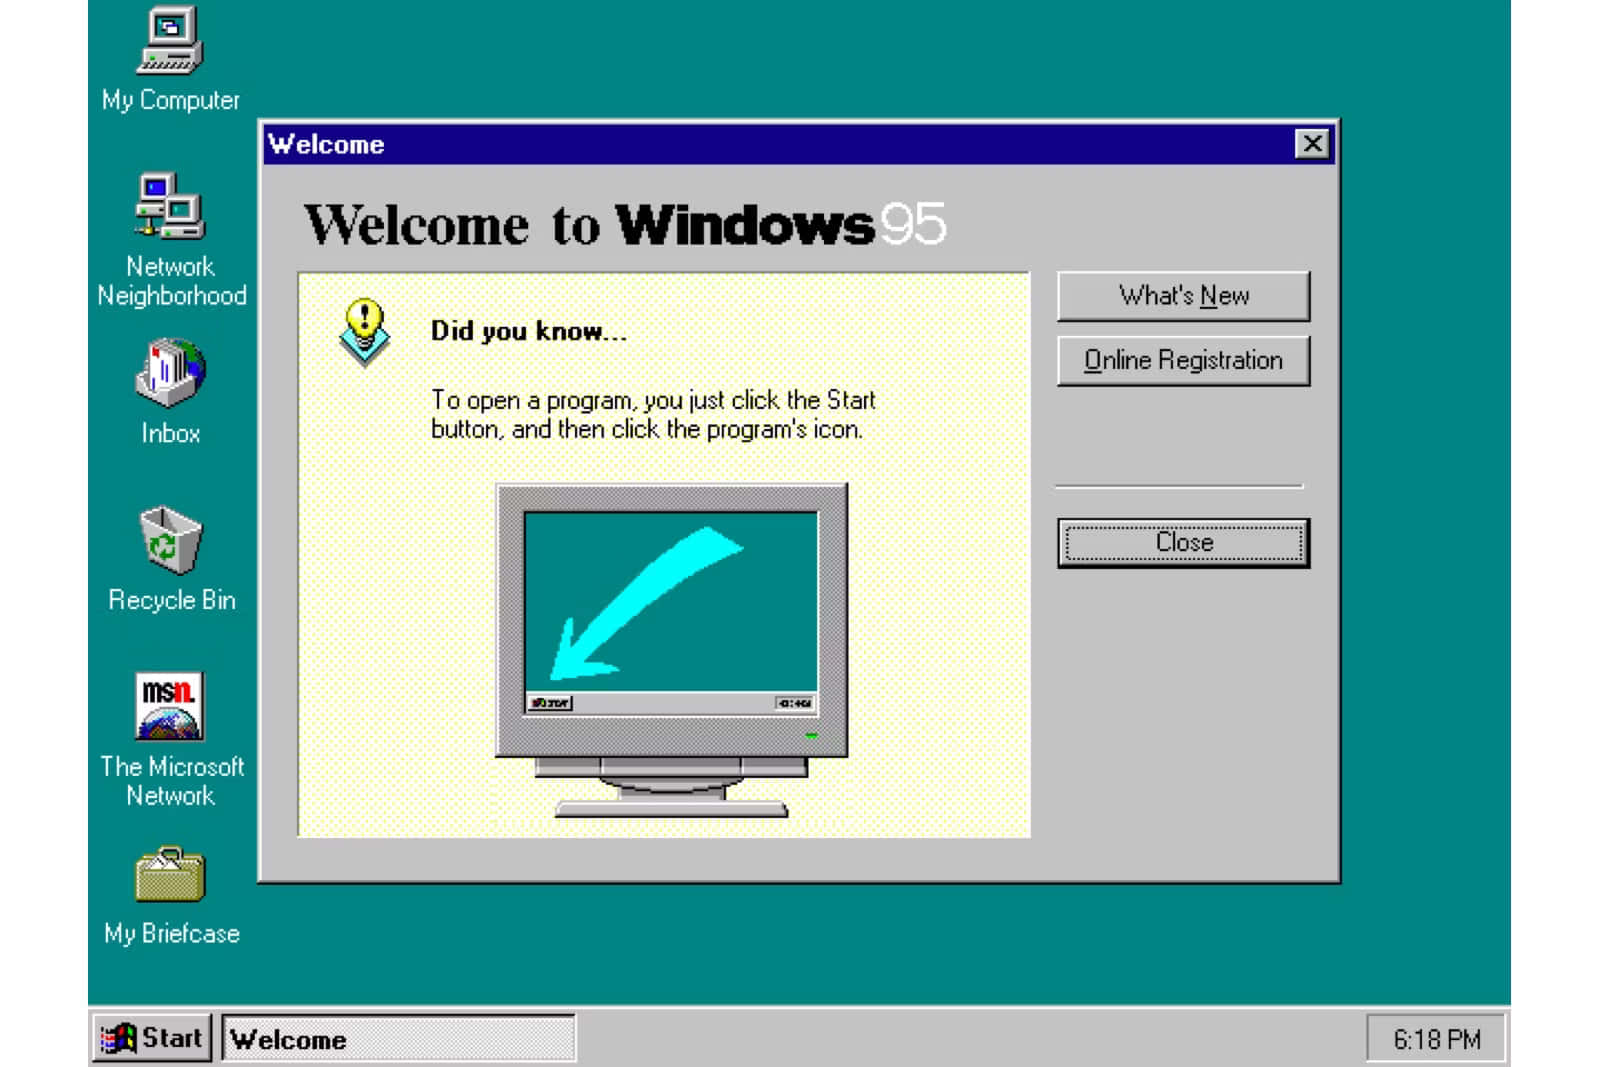 Den pålidelige, brugervenlige platform: Windows 95